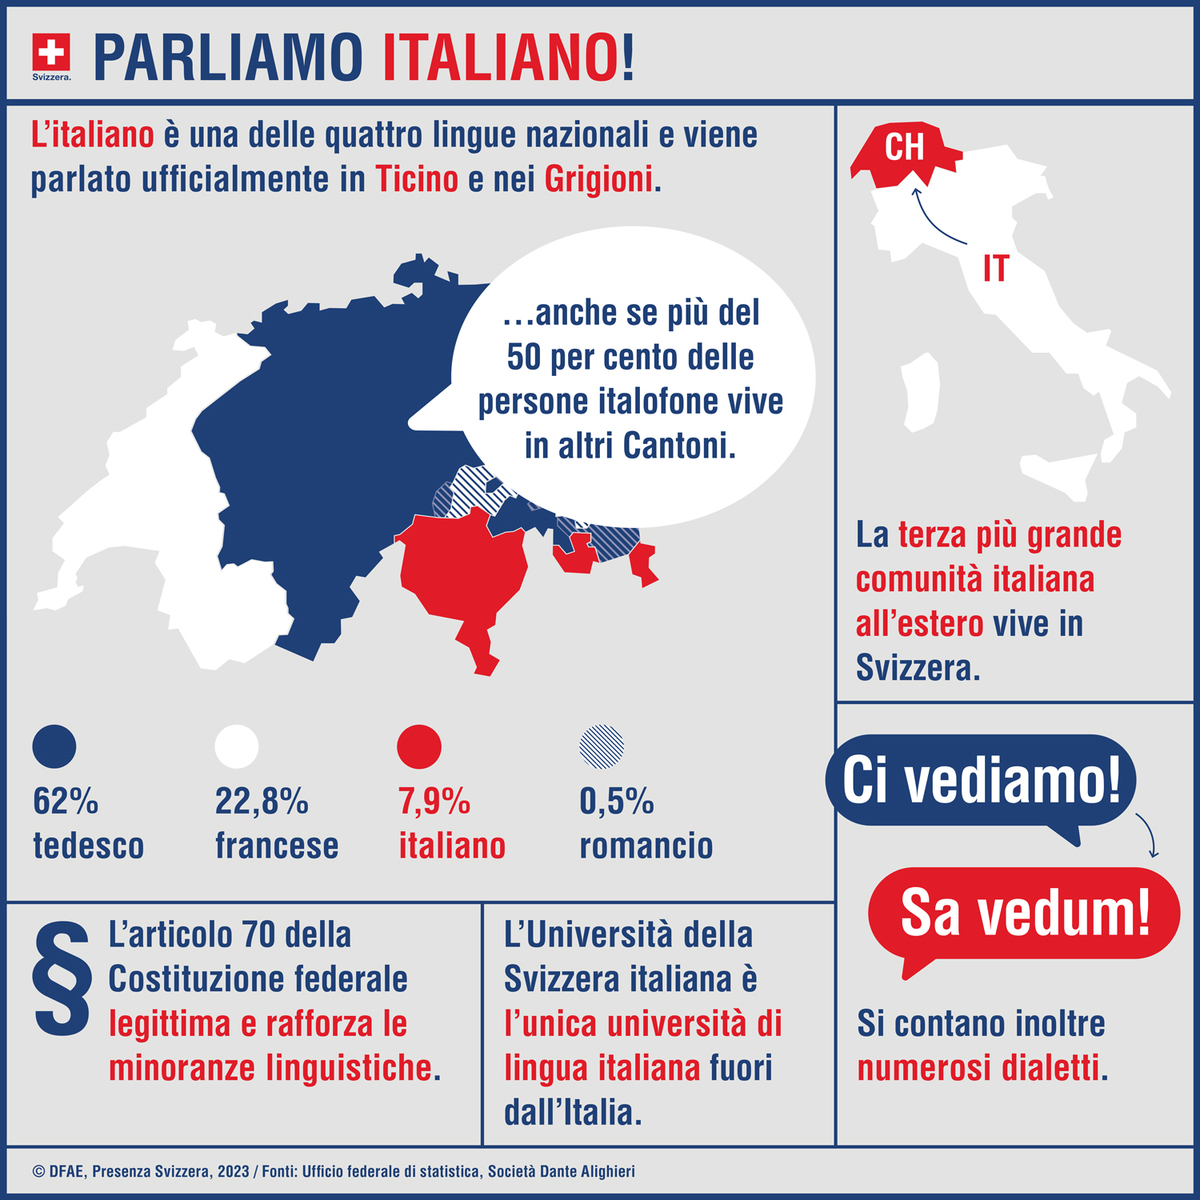 Lo sapevi che l'italiano è parlato principalmente dal 7,9% della popolazione svizzera? Scopri di più sulla lingua nazionale svizerra festeggiando la #SettimanaLinguaItaliana